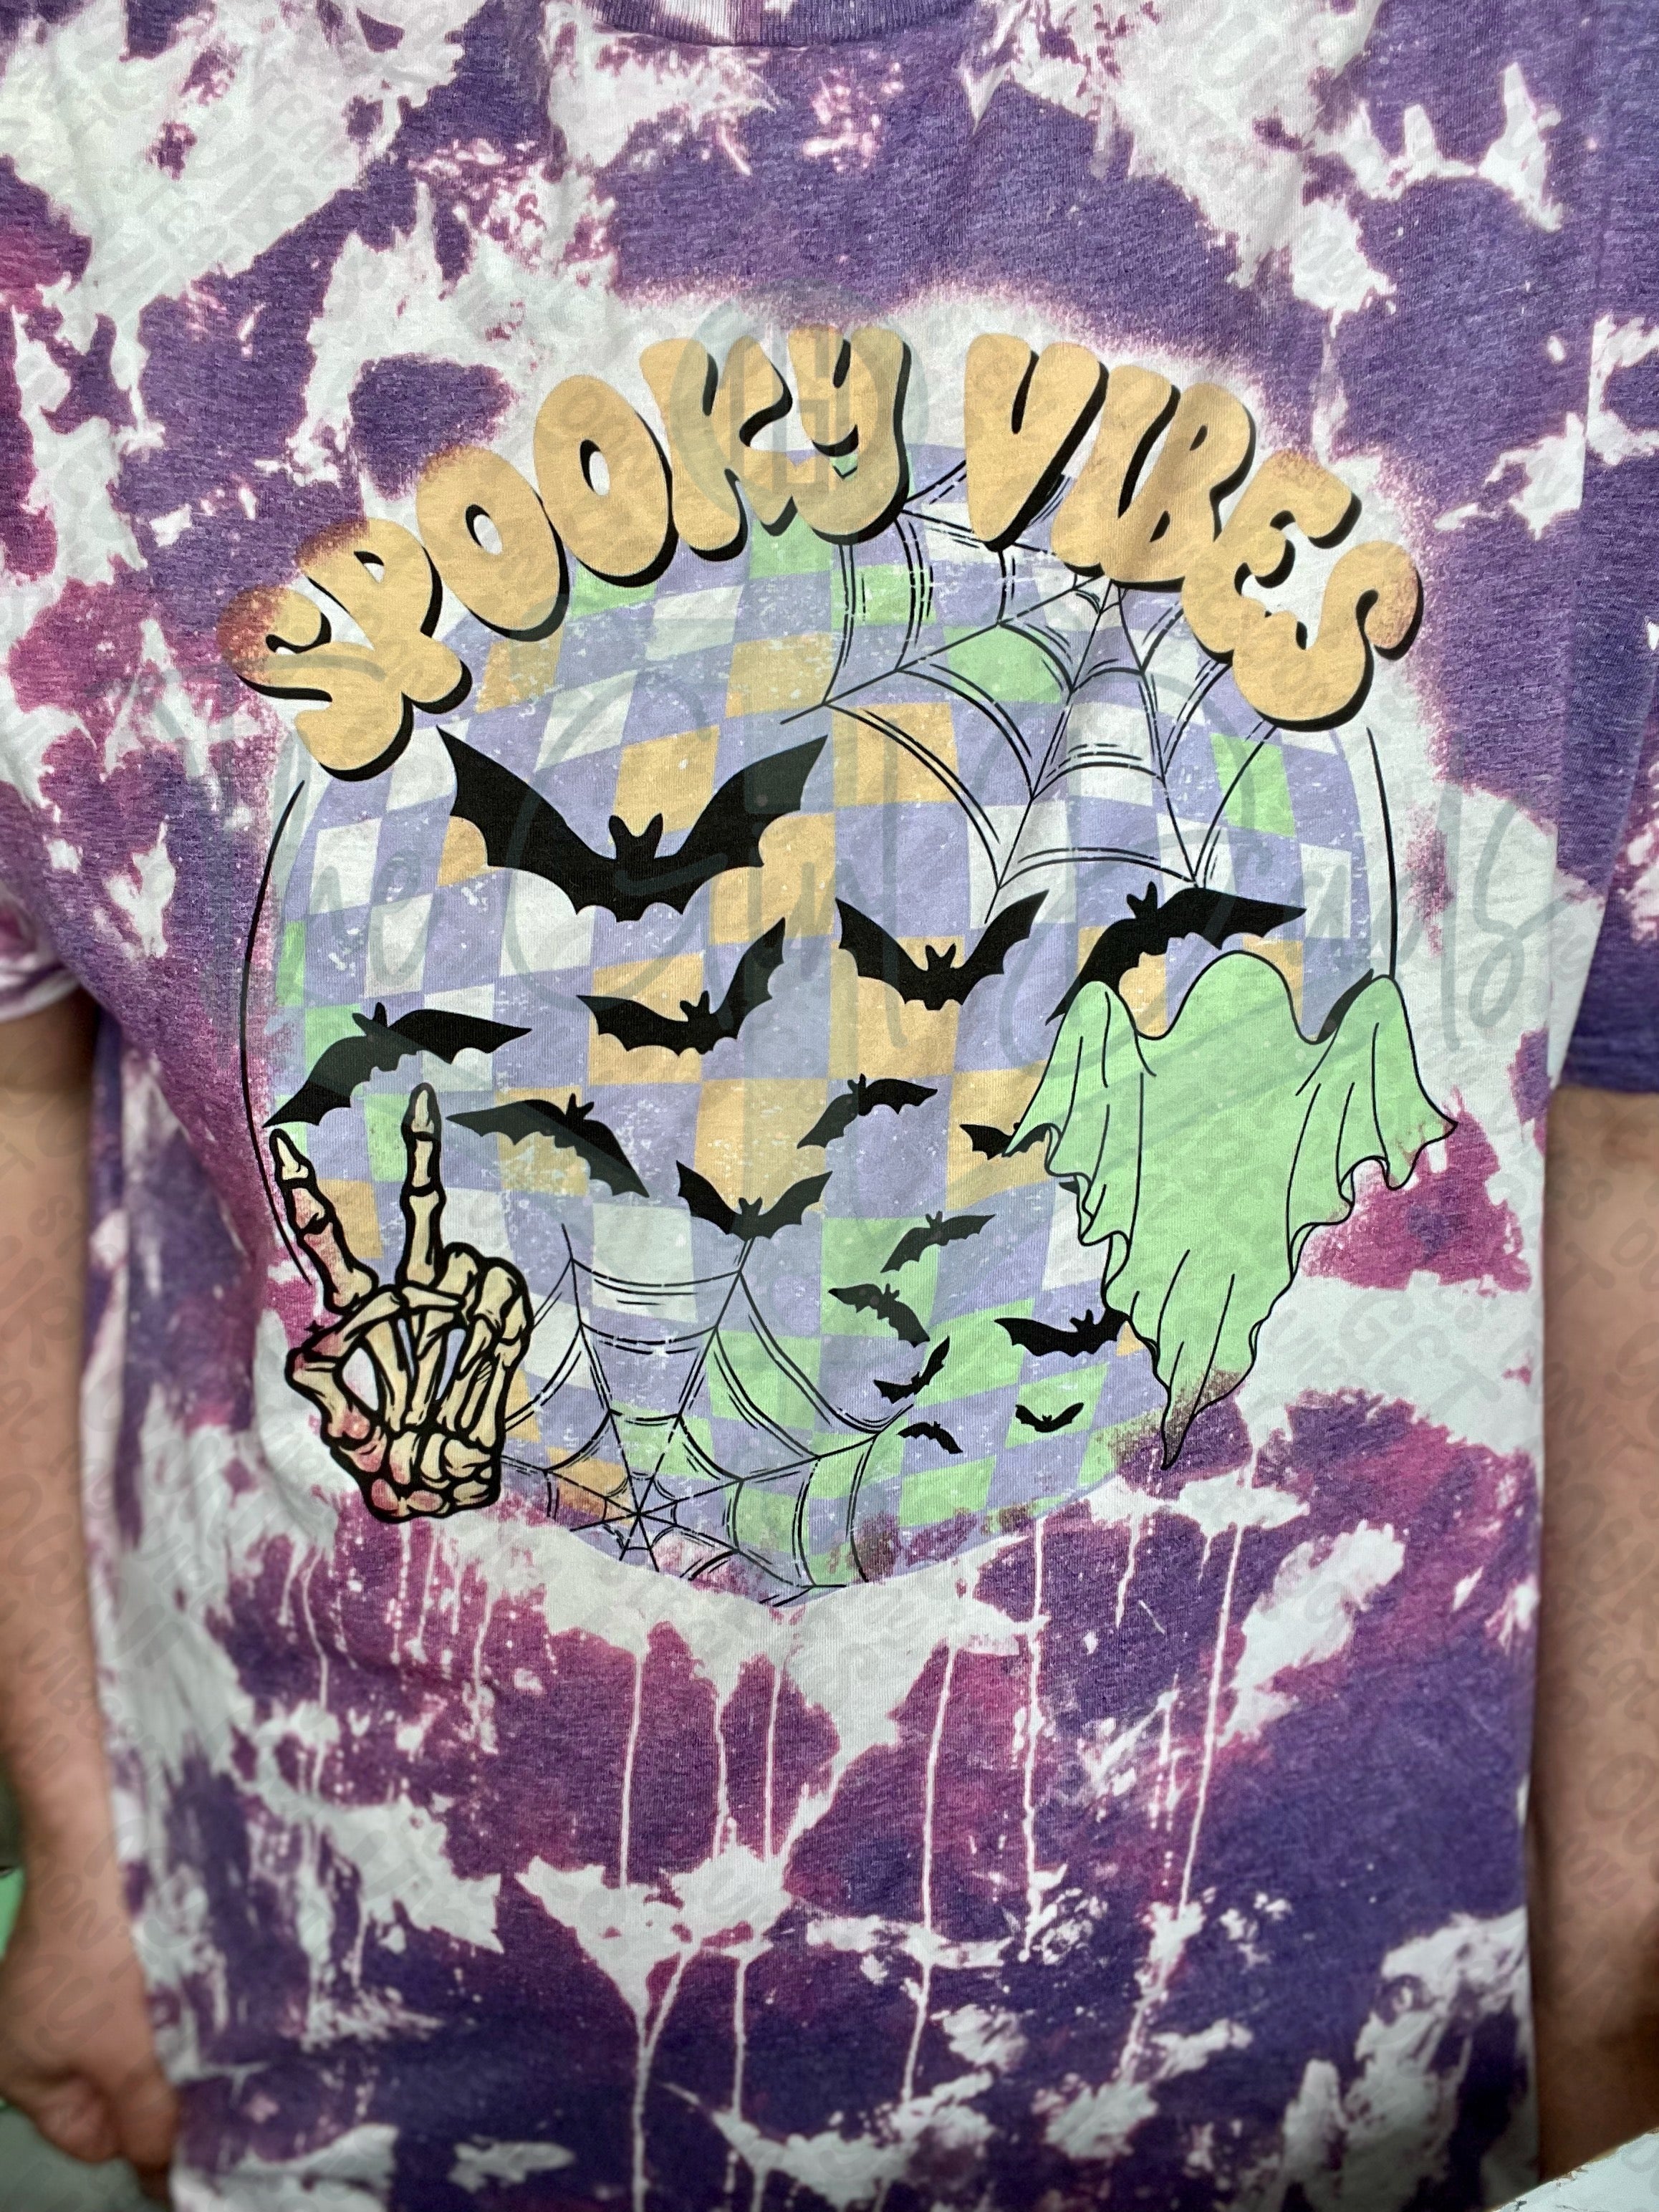 Spooky Vibes Disco Ball Top Design